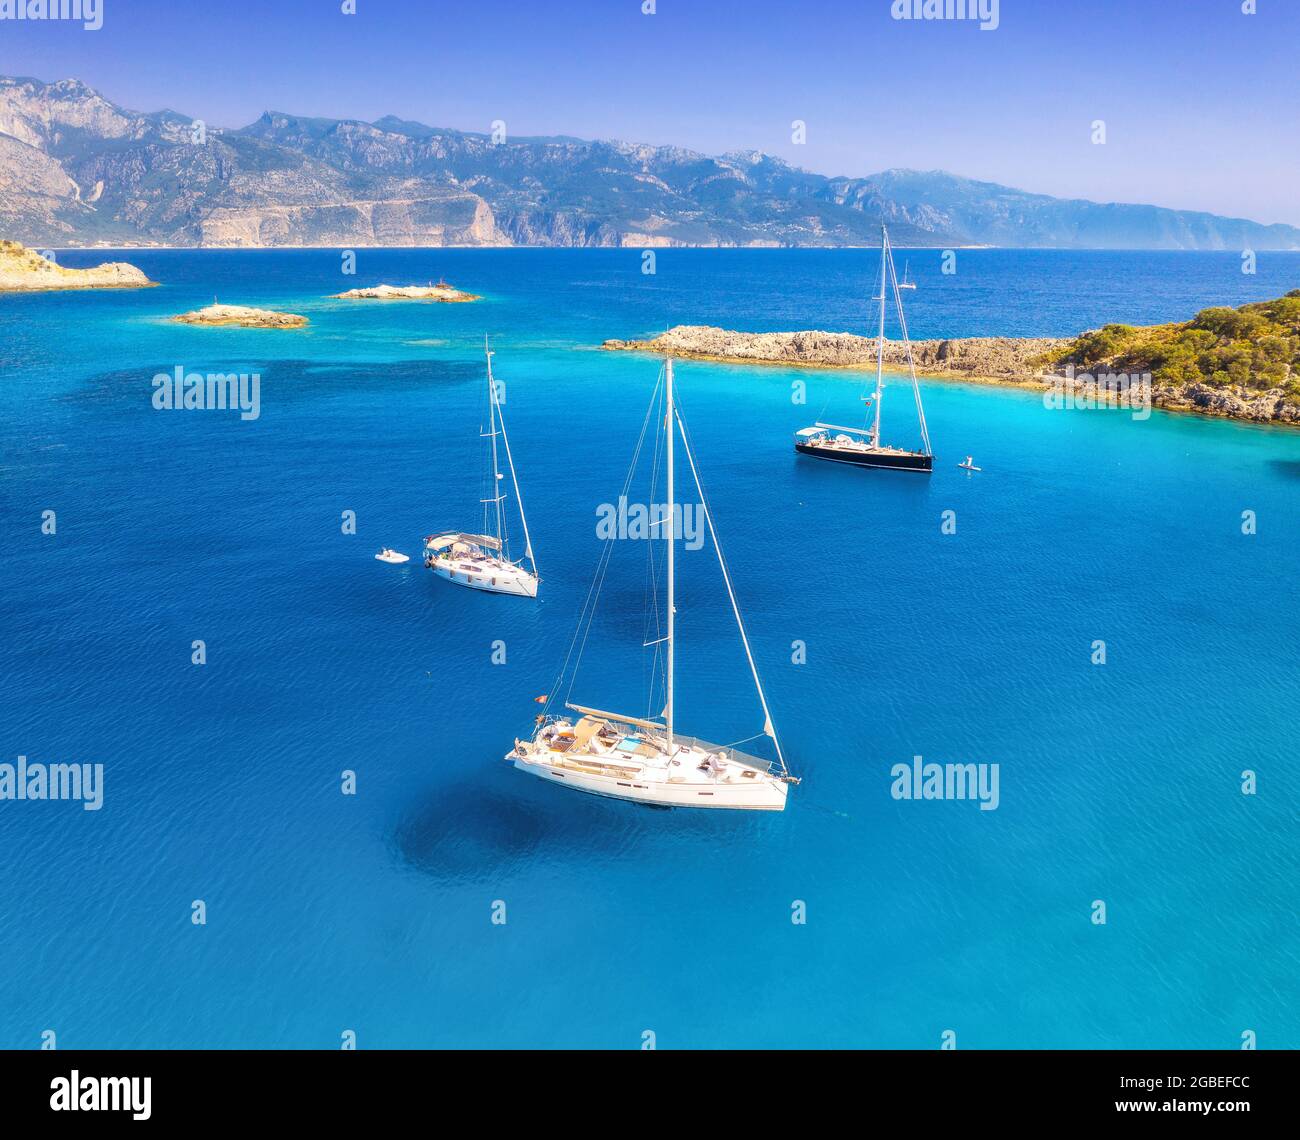 Vue aérienne de magnifiques yachts et bateaux sur la mer au coucher du soleil Banque D'Images